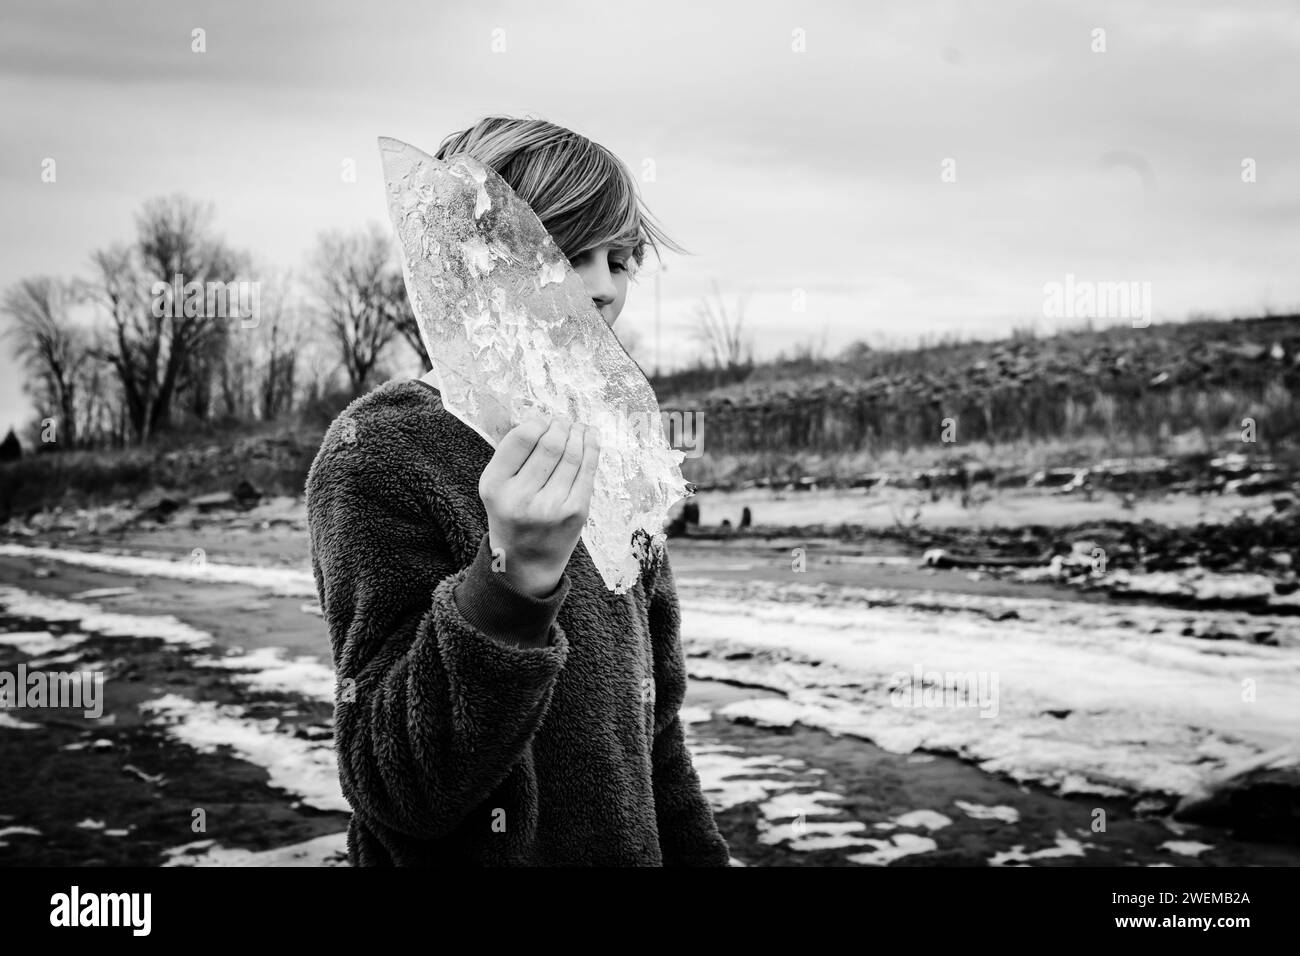 Junge vor Teenager, der das Ufer erforscht und gefrorene Eisschalen hält Stockfoto